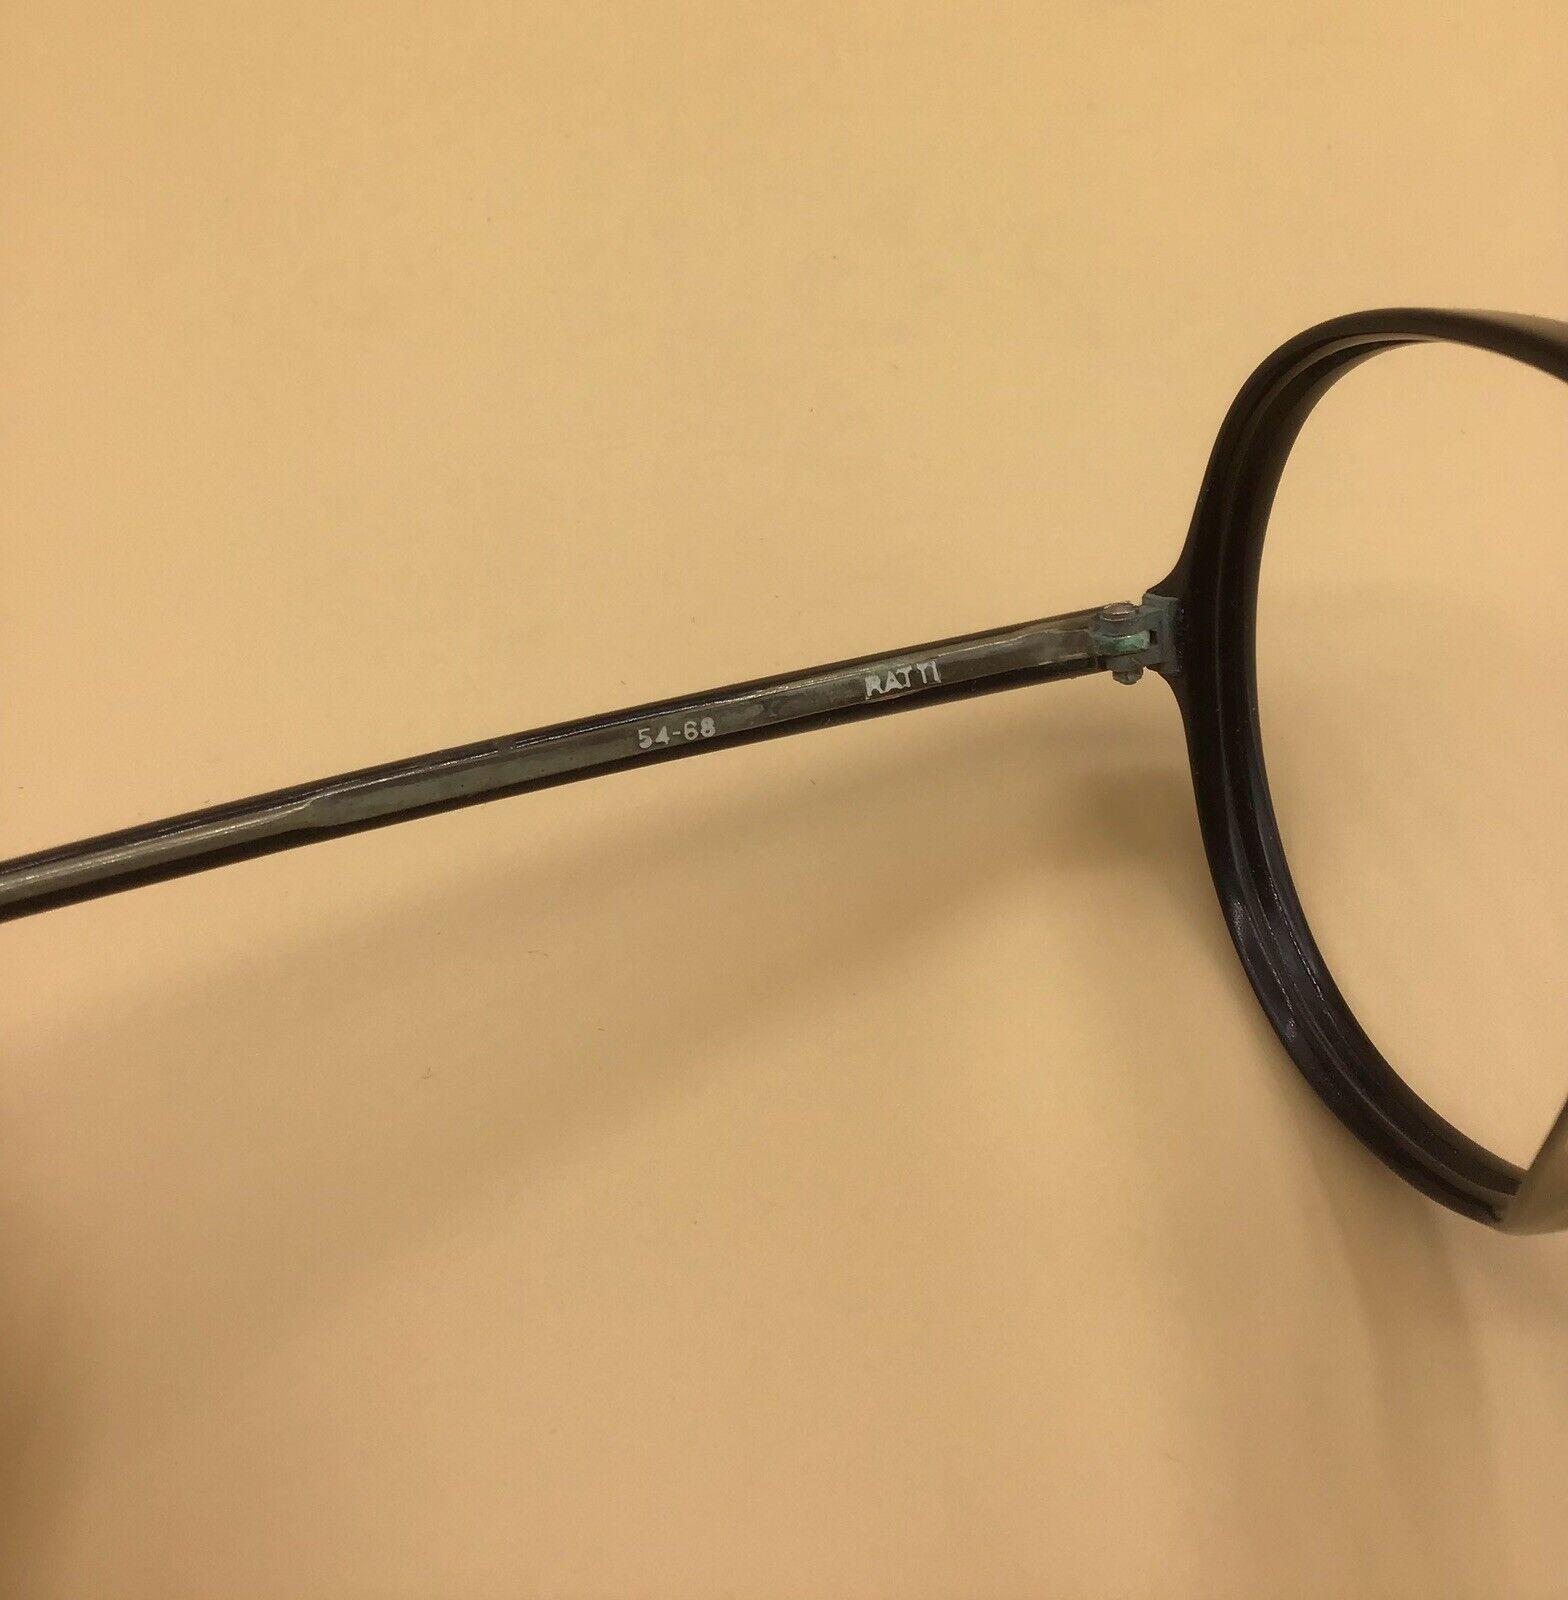 Persol Ratti 0743 occhiale vintage eyewear frame brillen lunettes